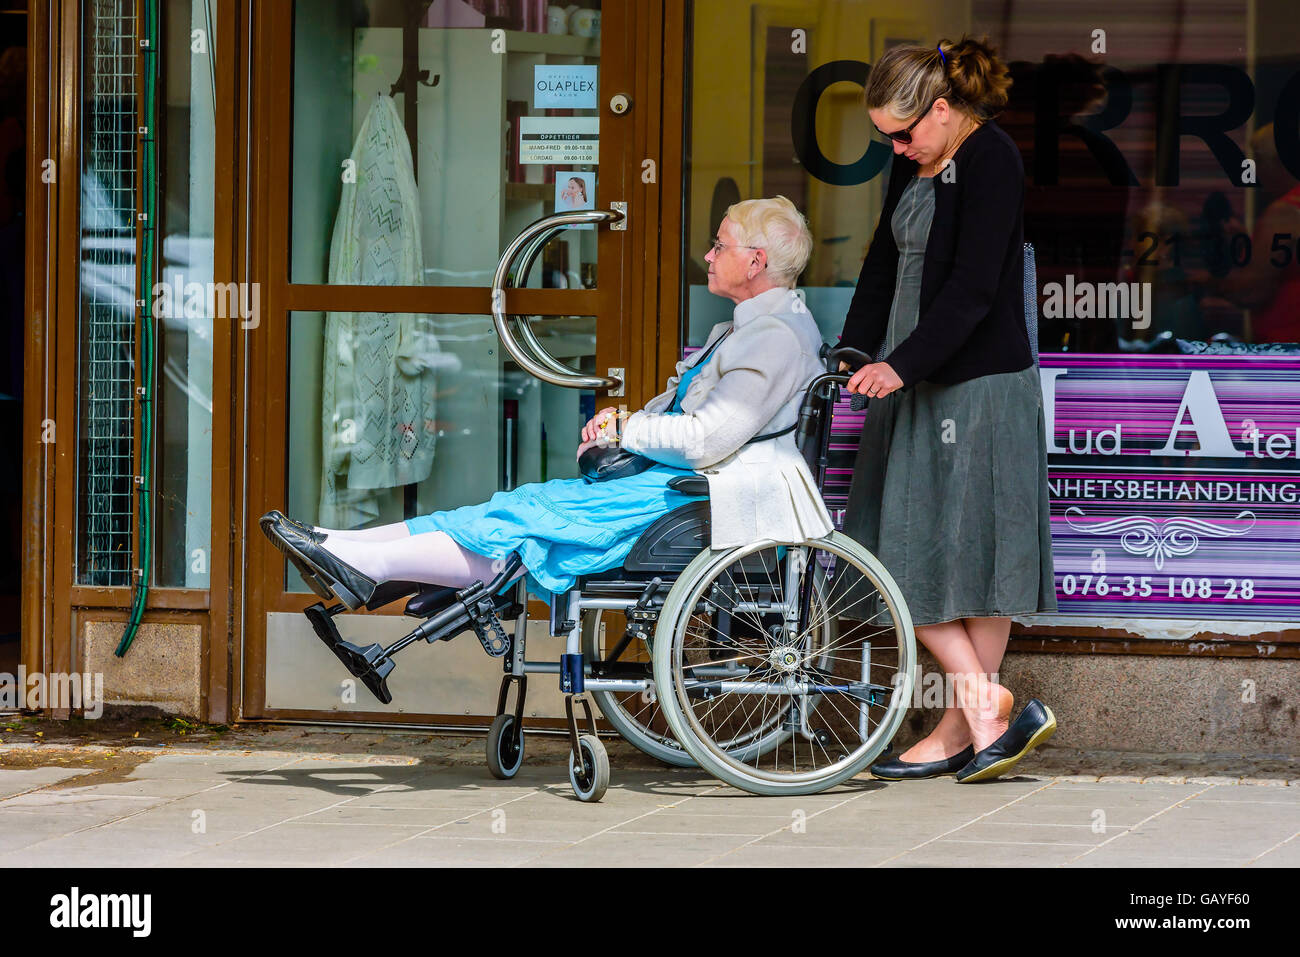 Ältere Dame in einem Rollstuhl streckt ihre Beine als sie und ihr Freund oder Helfer wartet Ou Motala, Schweden - 21. Juni 2016: Deaktiviert Stockfoto